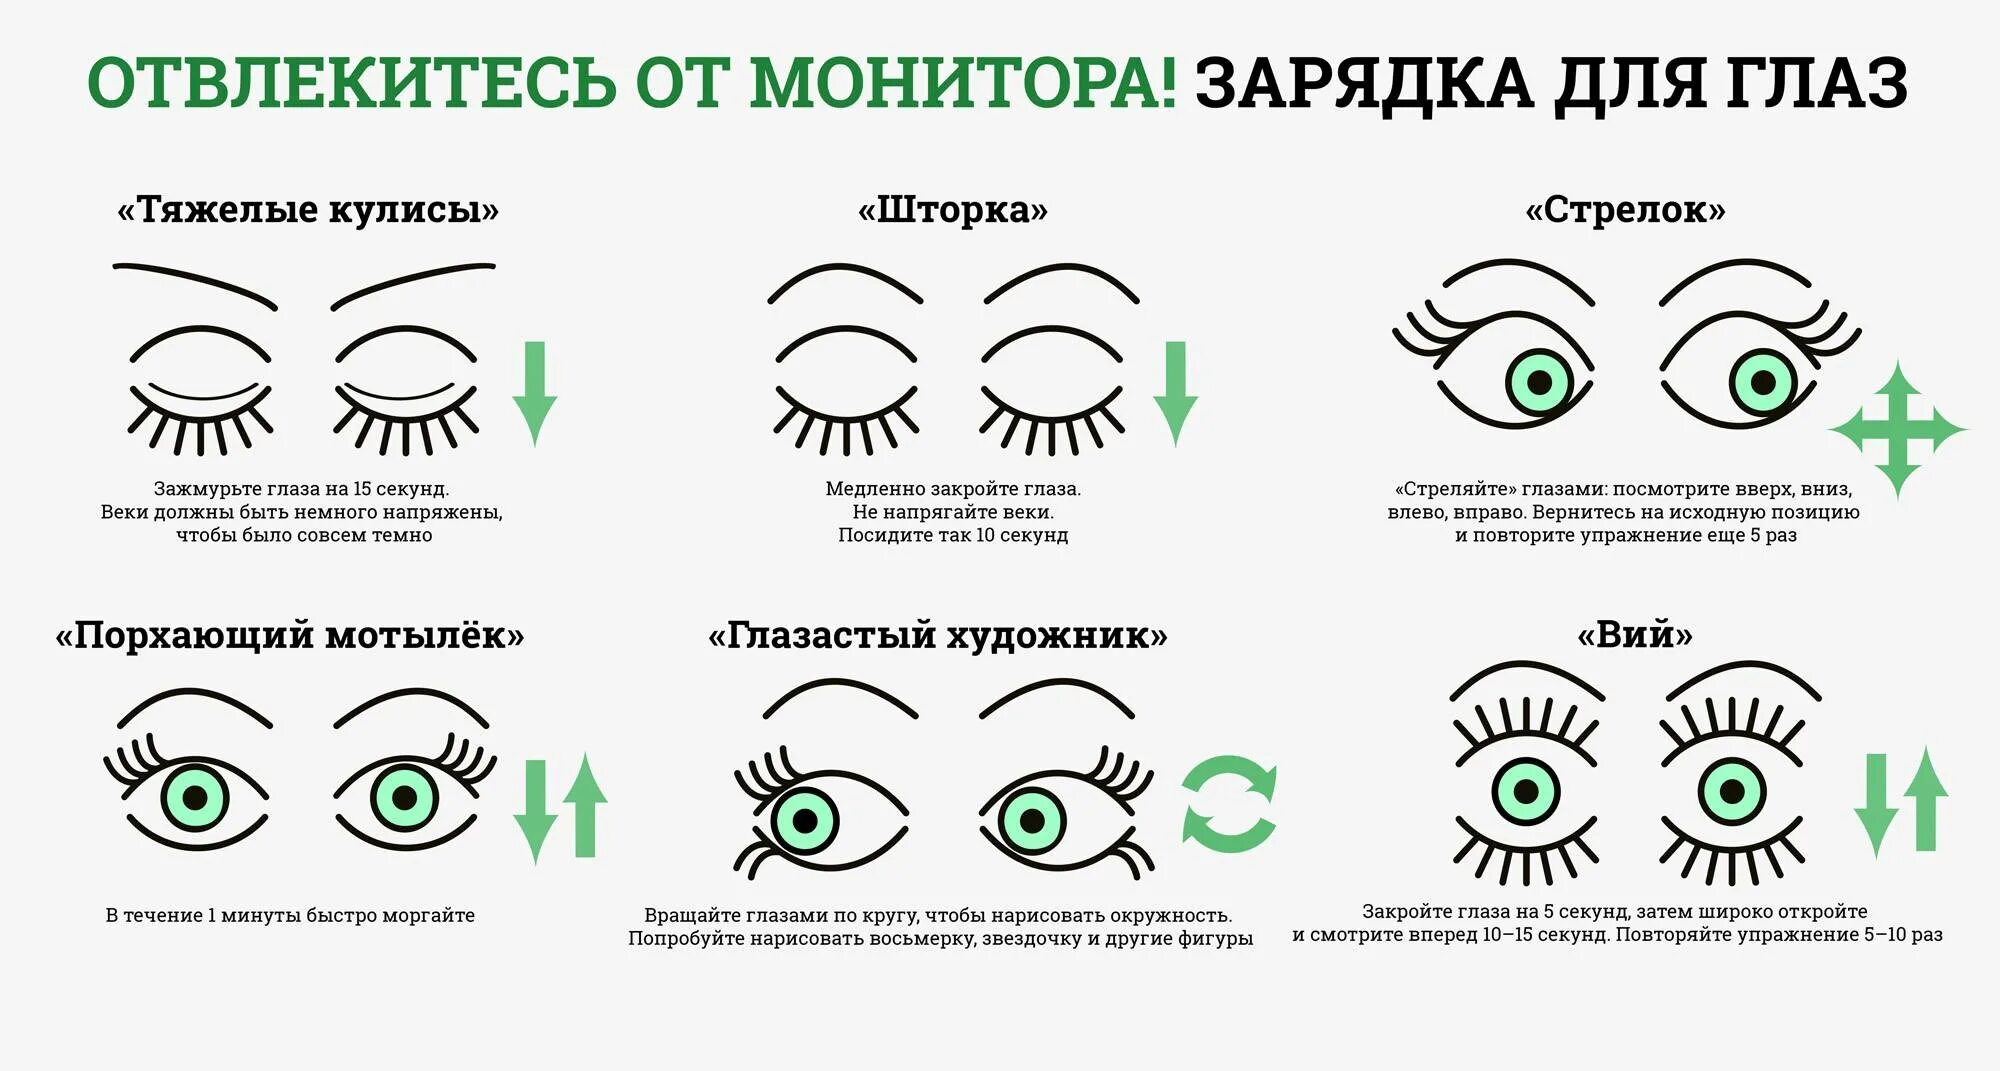 Он приятно для глаз пестреет. Гимнастика для глаз для улучшения зрения комплекс упражнений. Гимнастика для глаз для детей 10-11 лет для улучшения зрения. Схема зарядки для глаз для восстановления зрения. Гимнастика для глаз схемы упражнений.